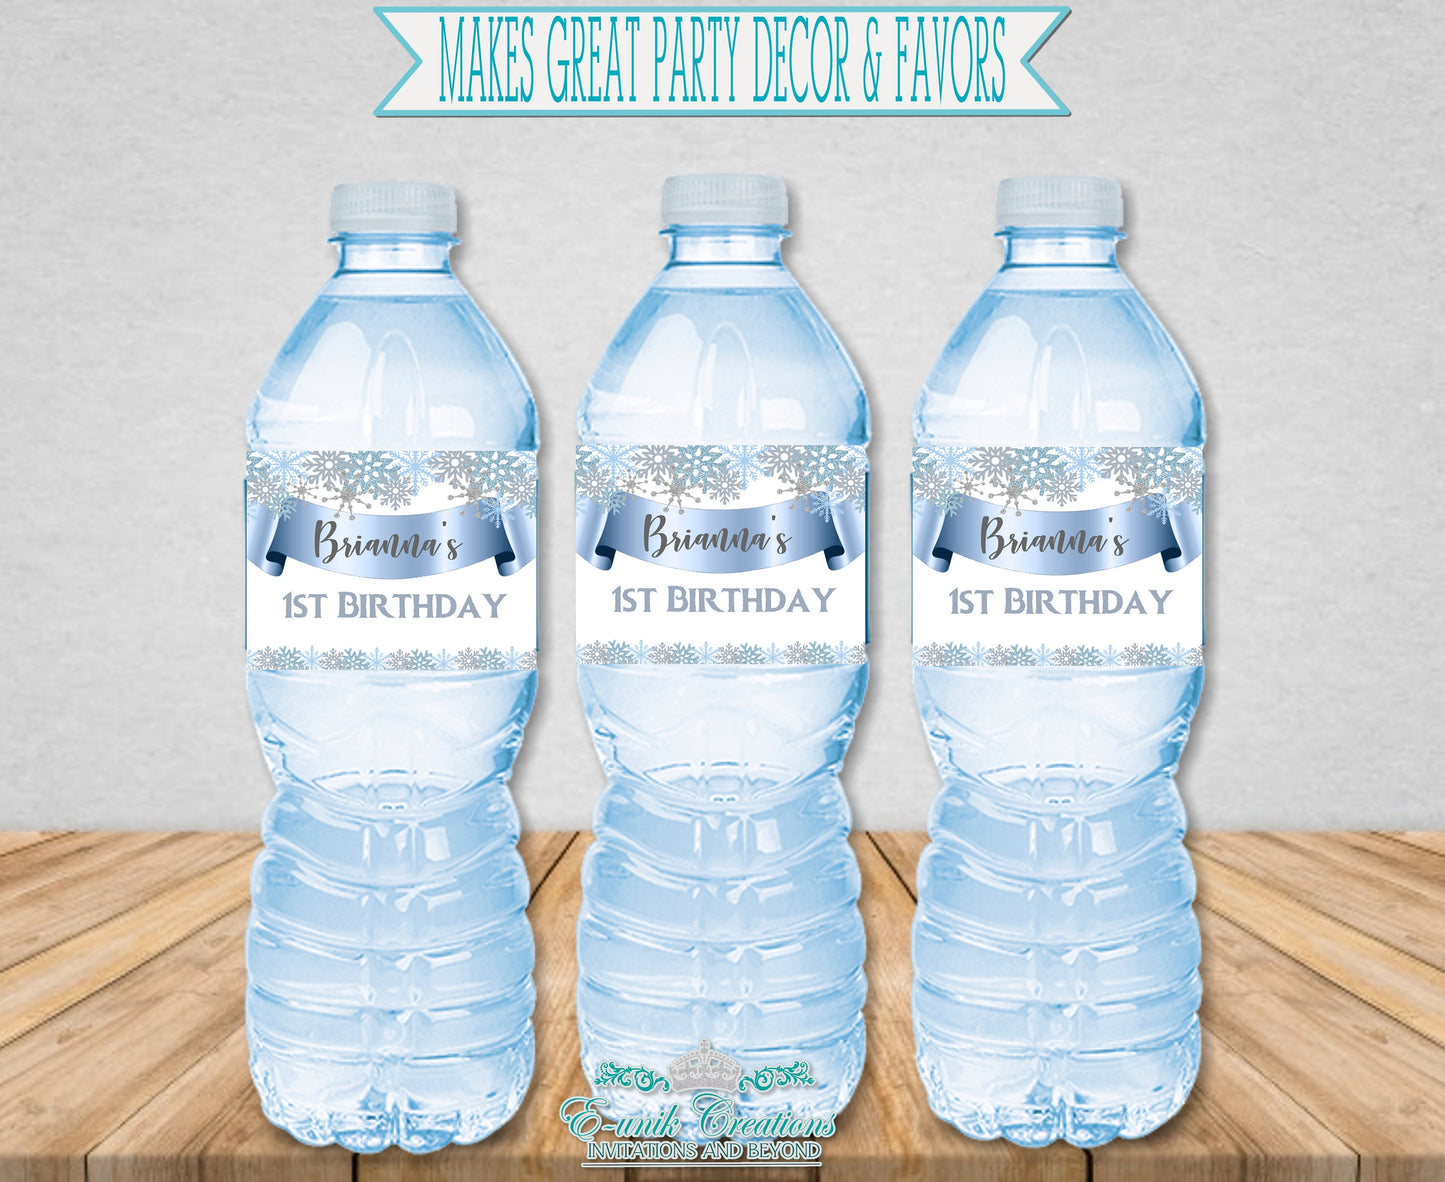 Etiquetas de copos de nieve, nieve derretida, etiquetas de agua personalizadas, envoltura de botellas de agua. F1120